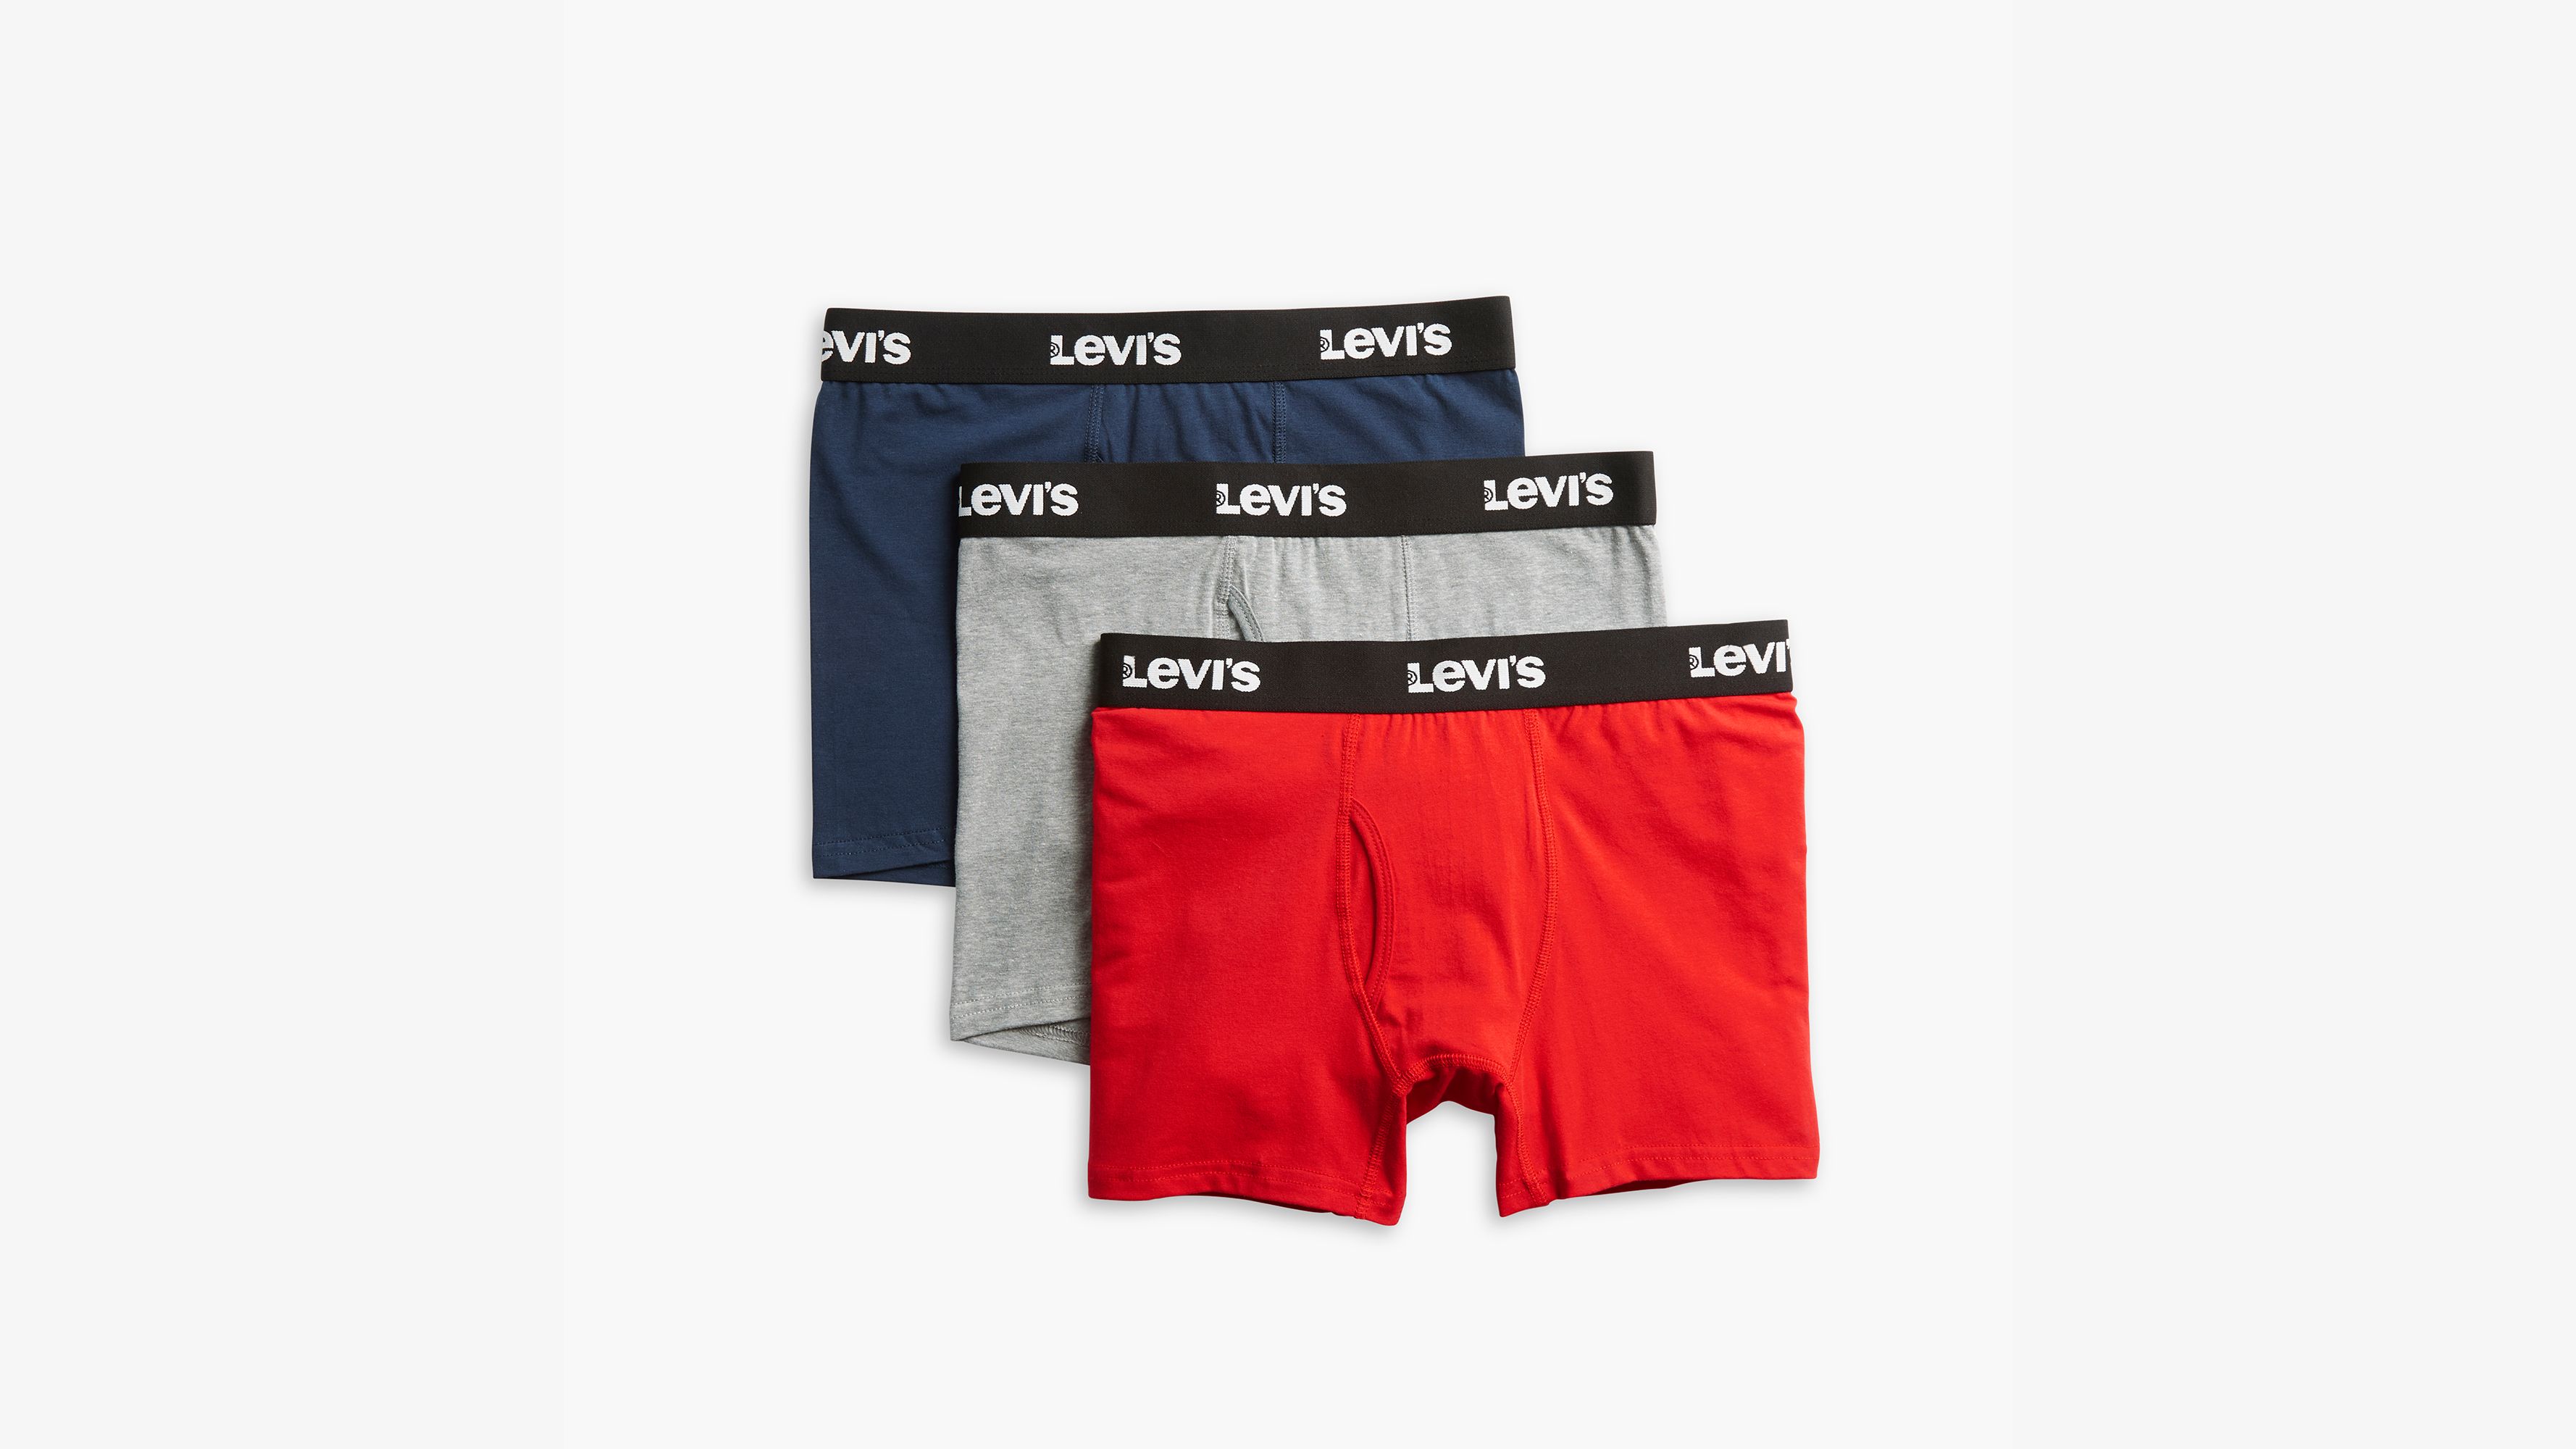 Underwear - (3 in 1) Slip Shorts Cotton - Provistore Limited